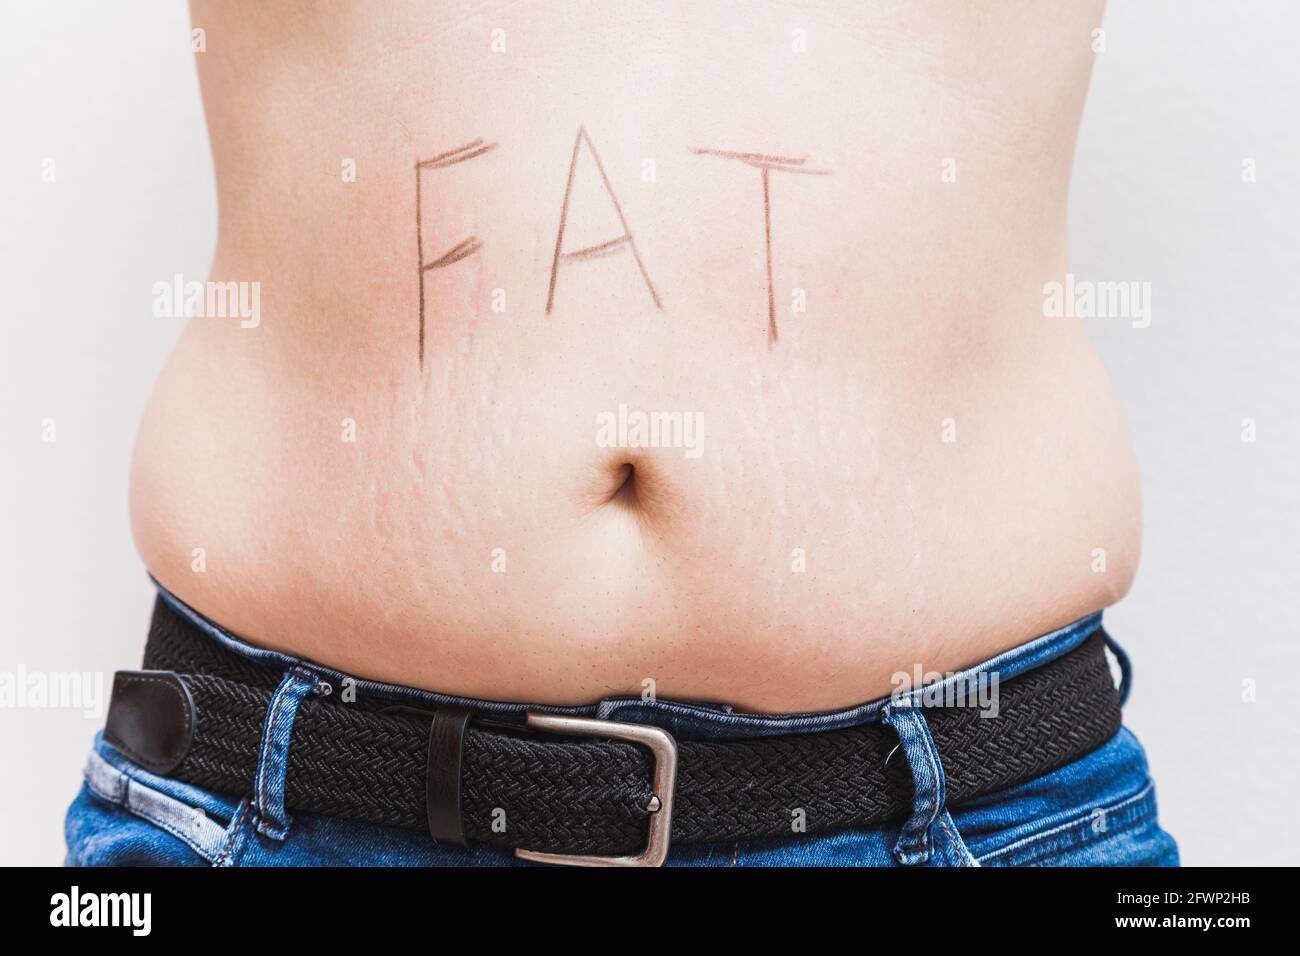 La parola 'grasso' scritta sul ventre di un uomo grasso irriconoscibile. L'uomo è vestito di jeans e indossa una cintura nera. Foto Stock